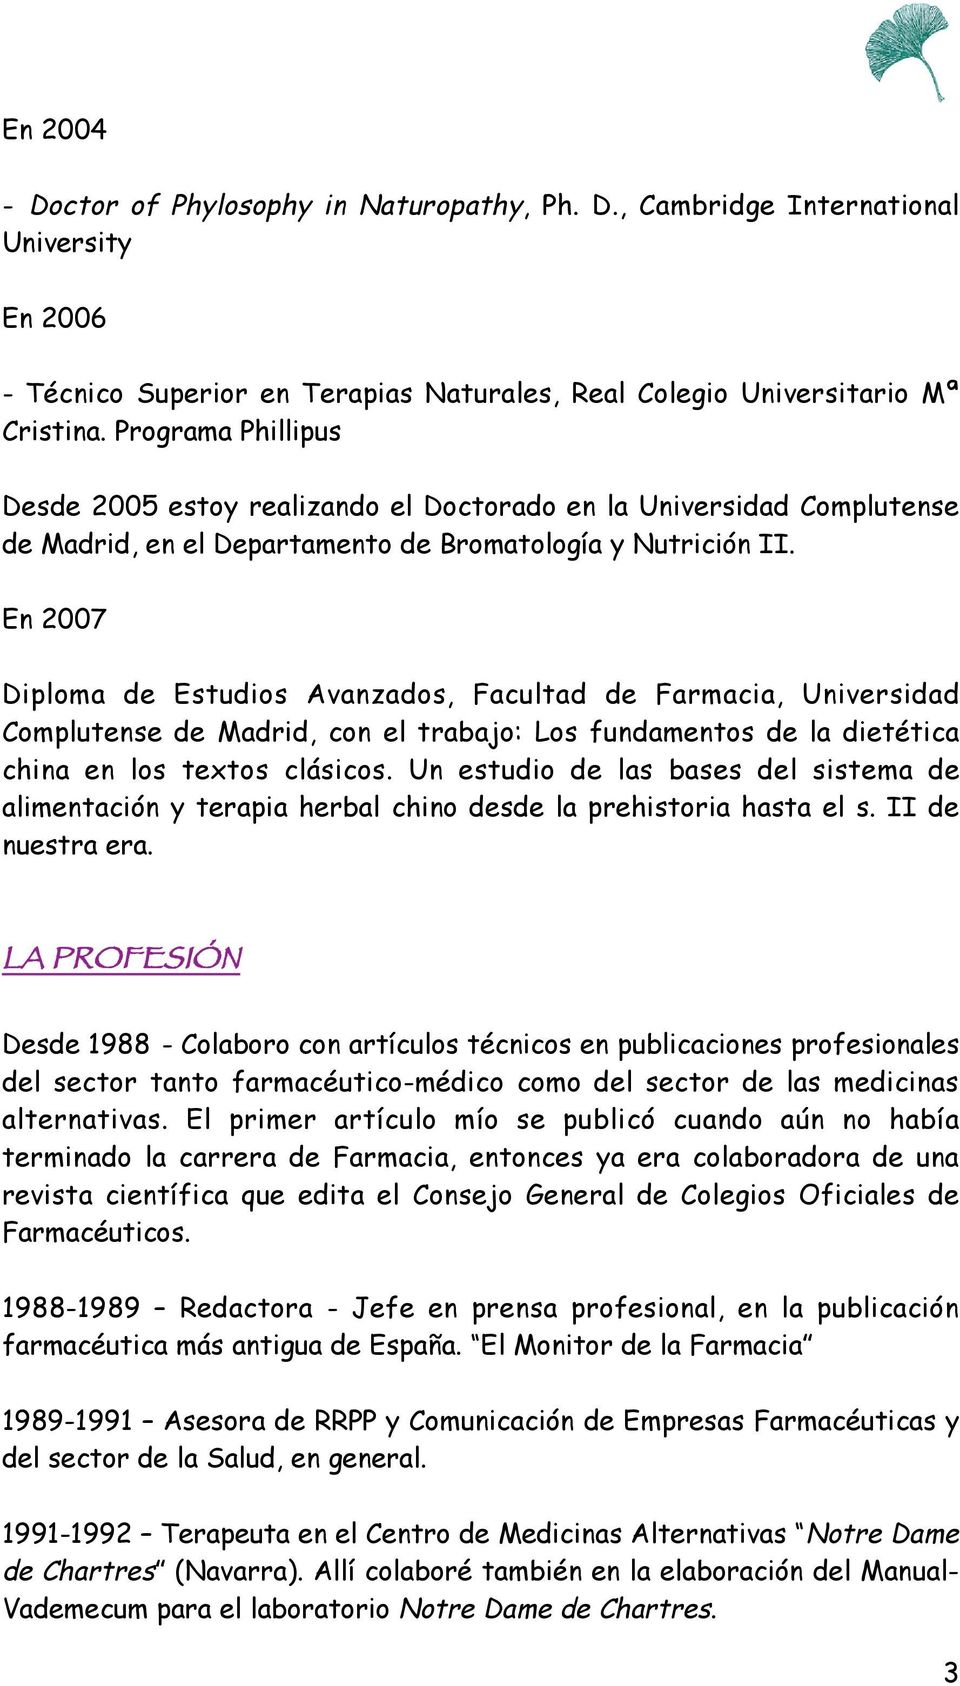 En 2007 Diploma de Estudios Avanzados, Facultad de Farmacia, Universidad Complutense de Madrid, con el trabajo: Los fundamentos de la dietética china en los textos clásicos.